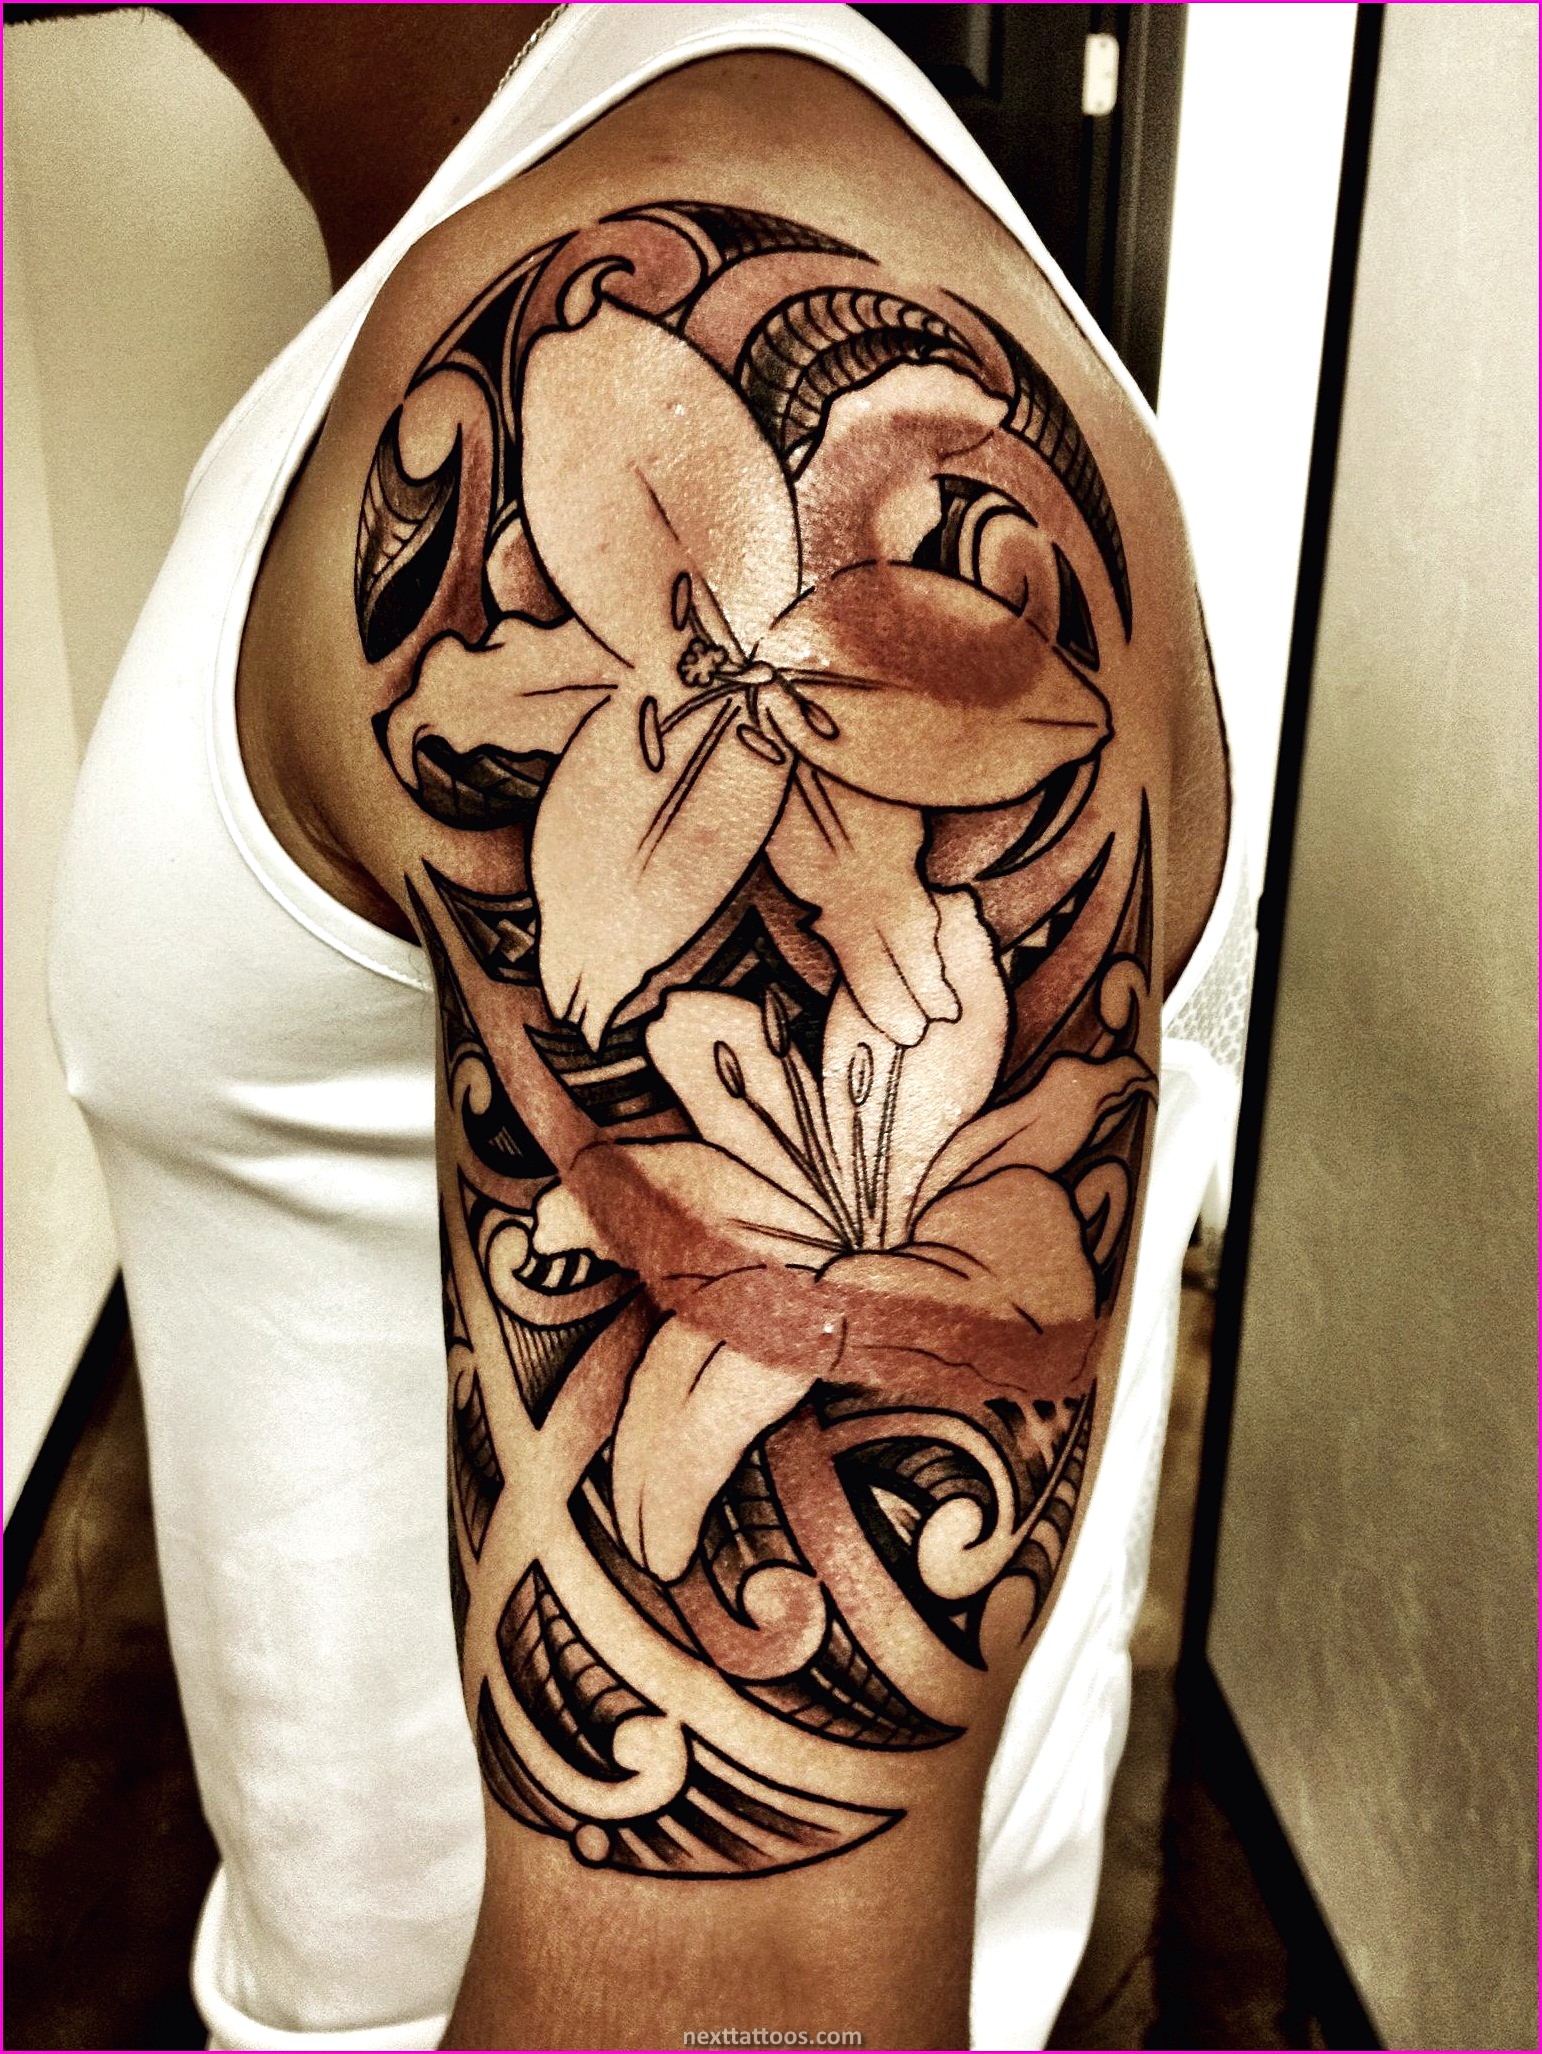 Flower Polynesian Tattoo Female - Shoulder Flower Polynesian Tattoo Female